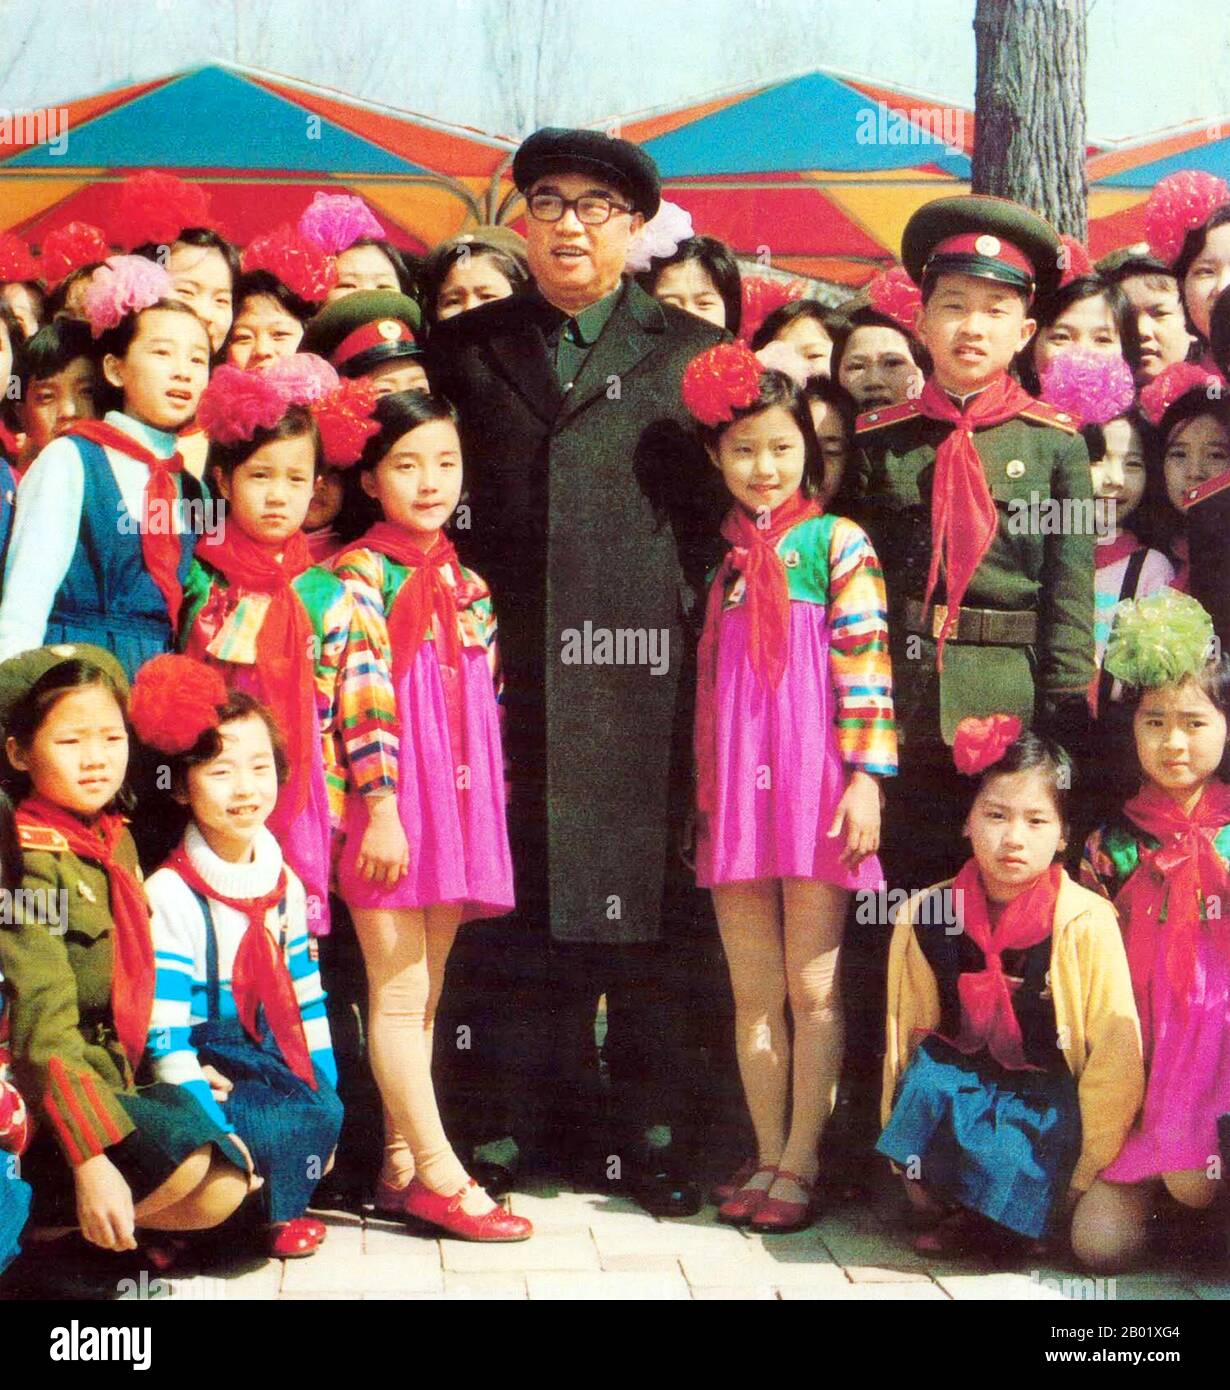 Kim Il-sung (15. April 1912 - 8. Juli 1994) war ein koreanischer kommunistischer Politiker, der Nordkorea, offiziell die Demokratische Volksrepublik Korea, von seiner Gründung 1948 bis zu seinem Tod 1994 regierte. Er bekleidete von 1948 bis 1972 die Ämter des Premierministers und von 1972 bis zu seinem Tod den des Präsidenten. Außerdem war er von 1949 bis 1994 Führer der Arbeiterpartei Koreas (von 1949 bis 1966 als Vorsitzender und nach 1966 als Generalsekretär betitelt). Seine Amtszeit als Führer Nordkoreas wurde oft als autokratisch bezeichnet und er etablierte einen allumfassenden Personenkult. Ab Mitte 1960 Stockfoto